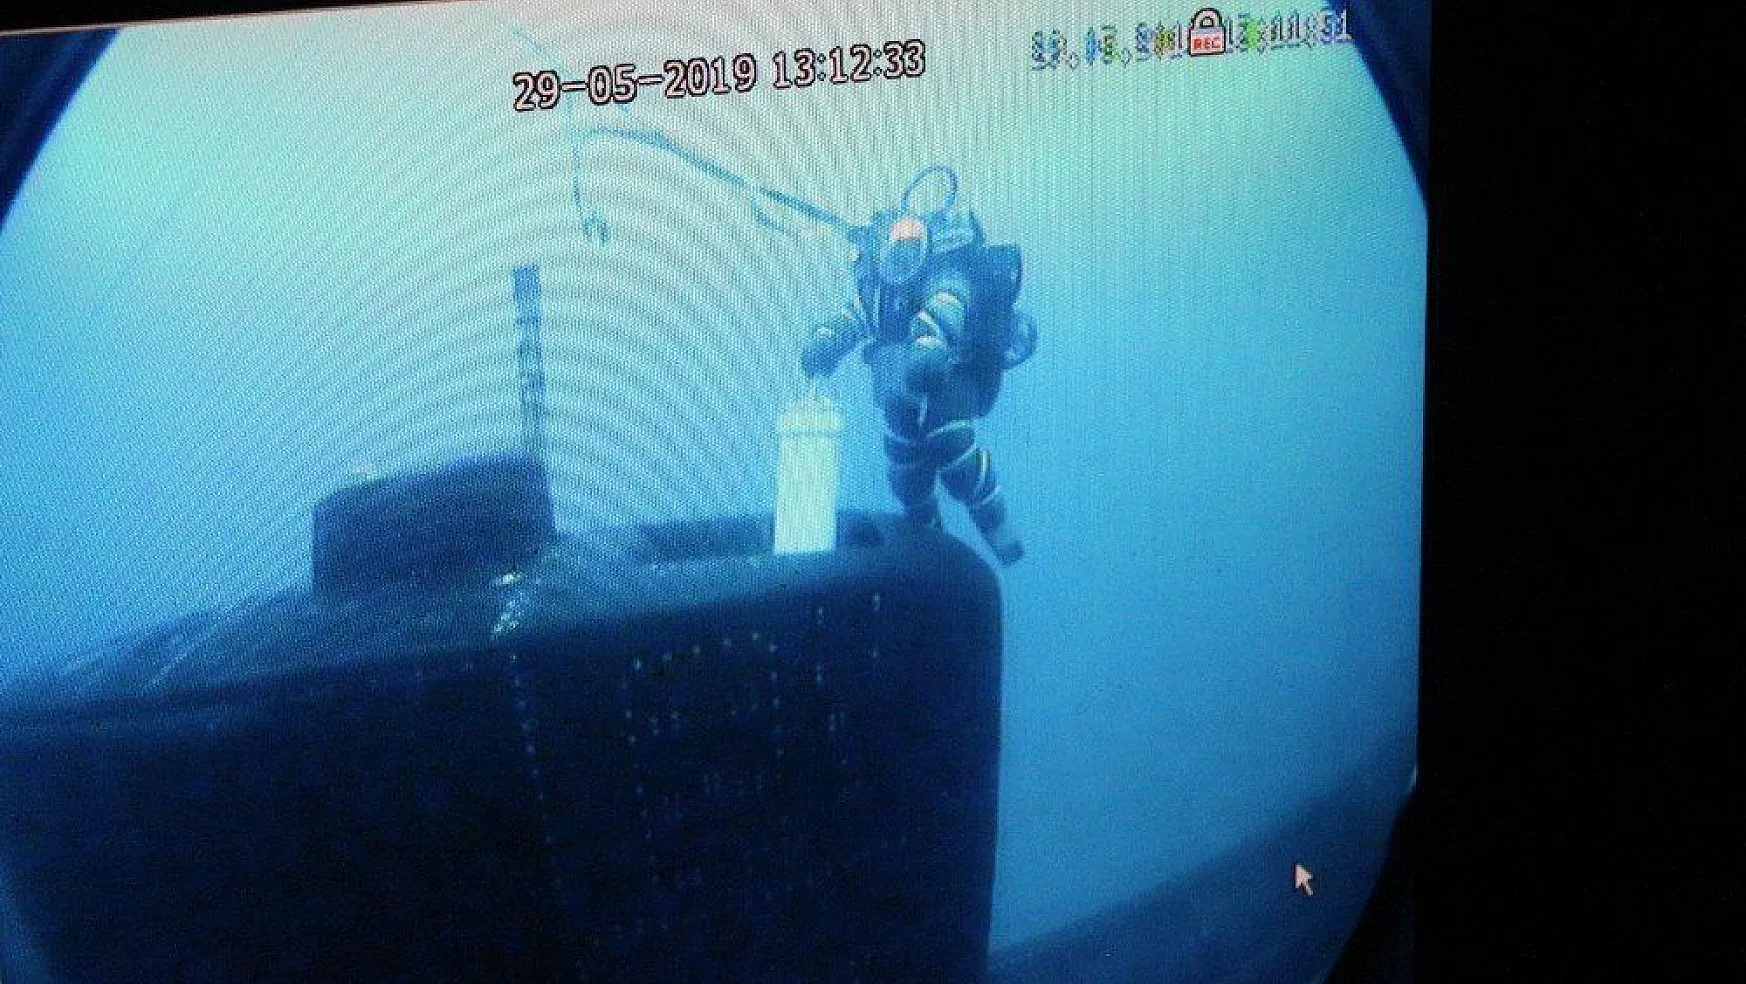 Kurtaran-2019'da, senaryo gereği arızalanan denizaltından kurtarma yapıldı